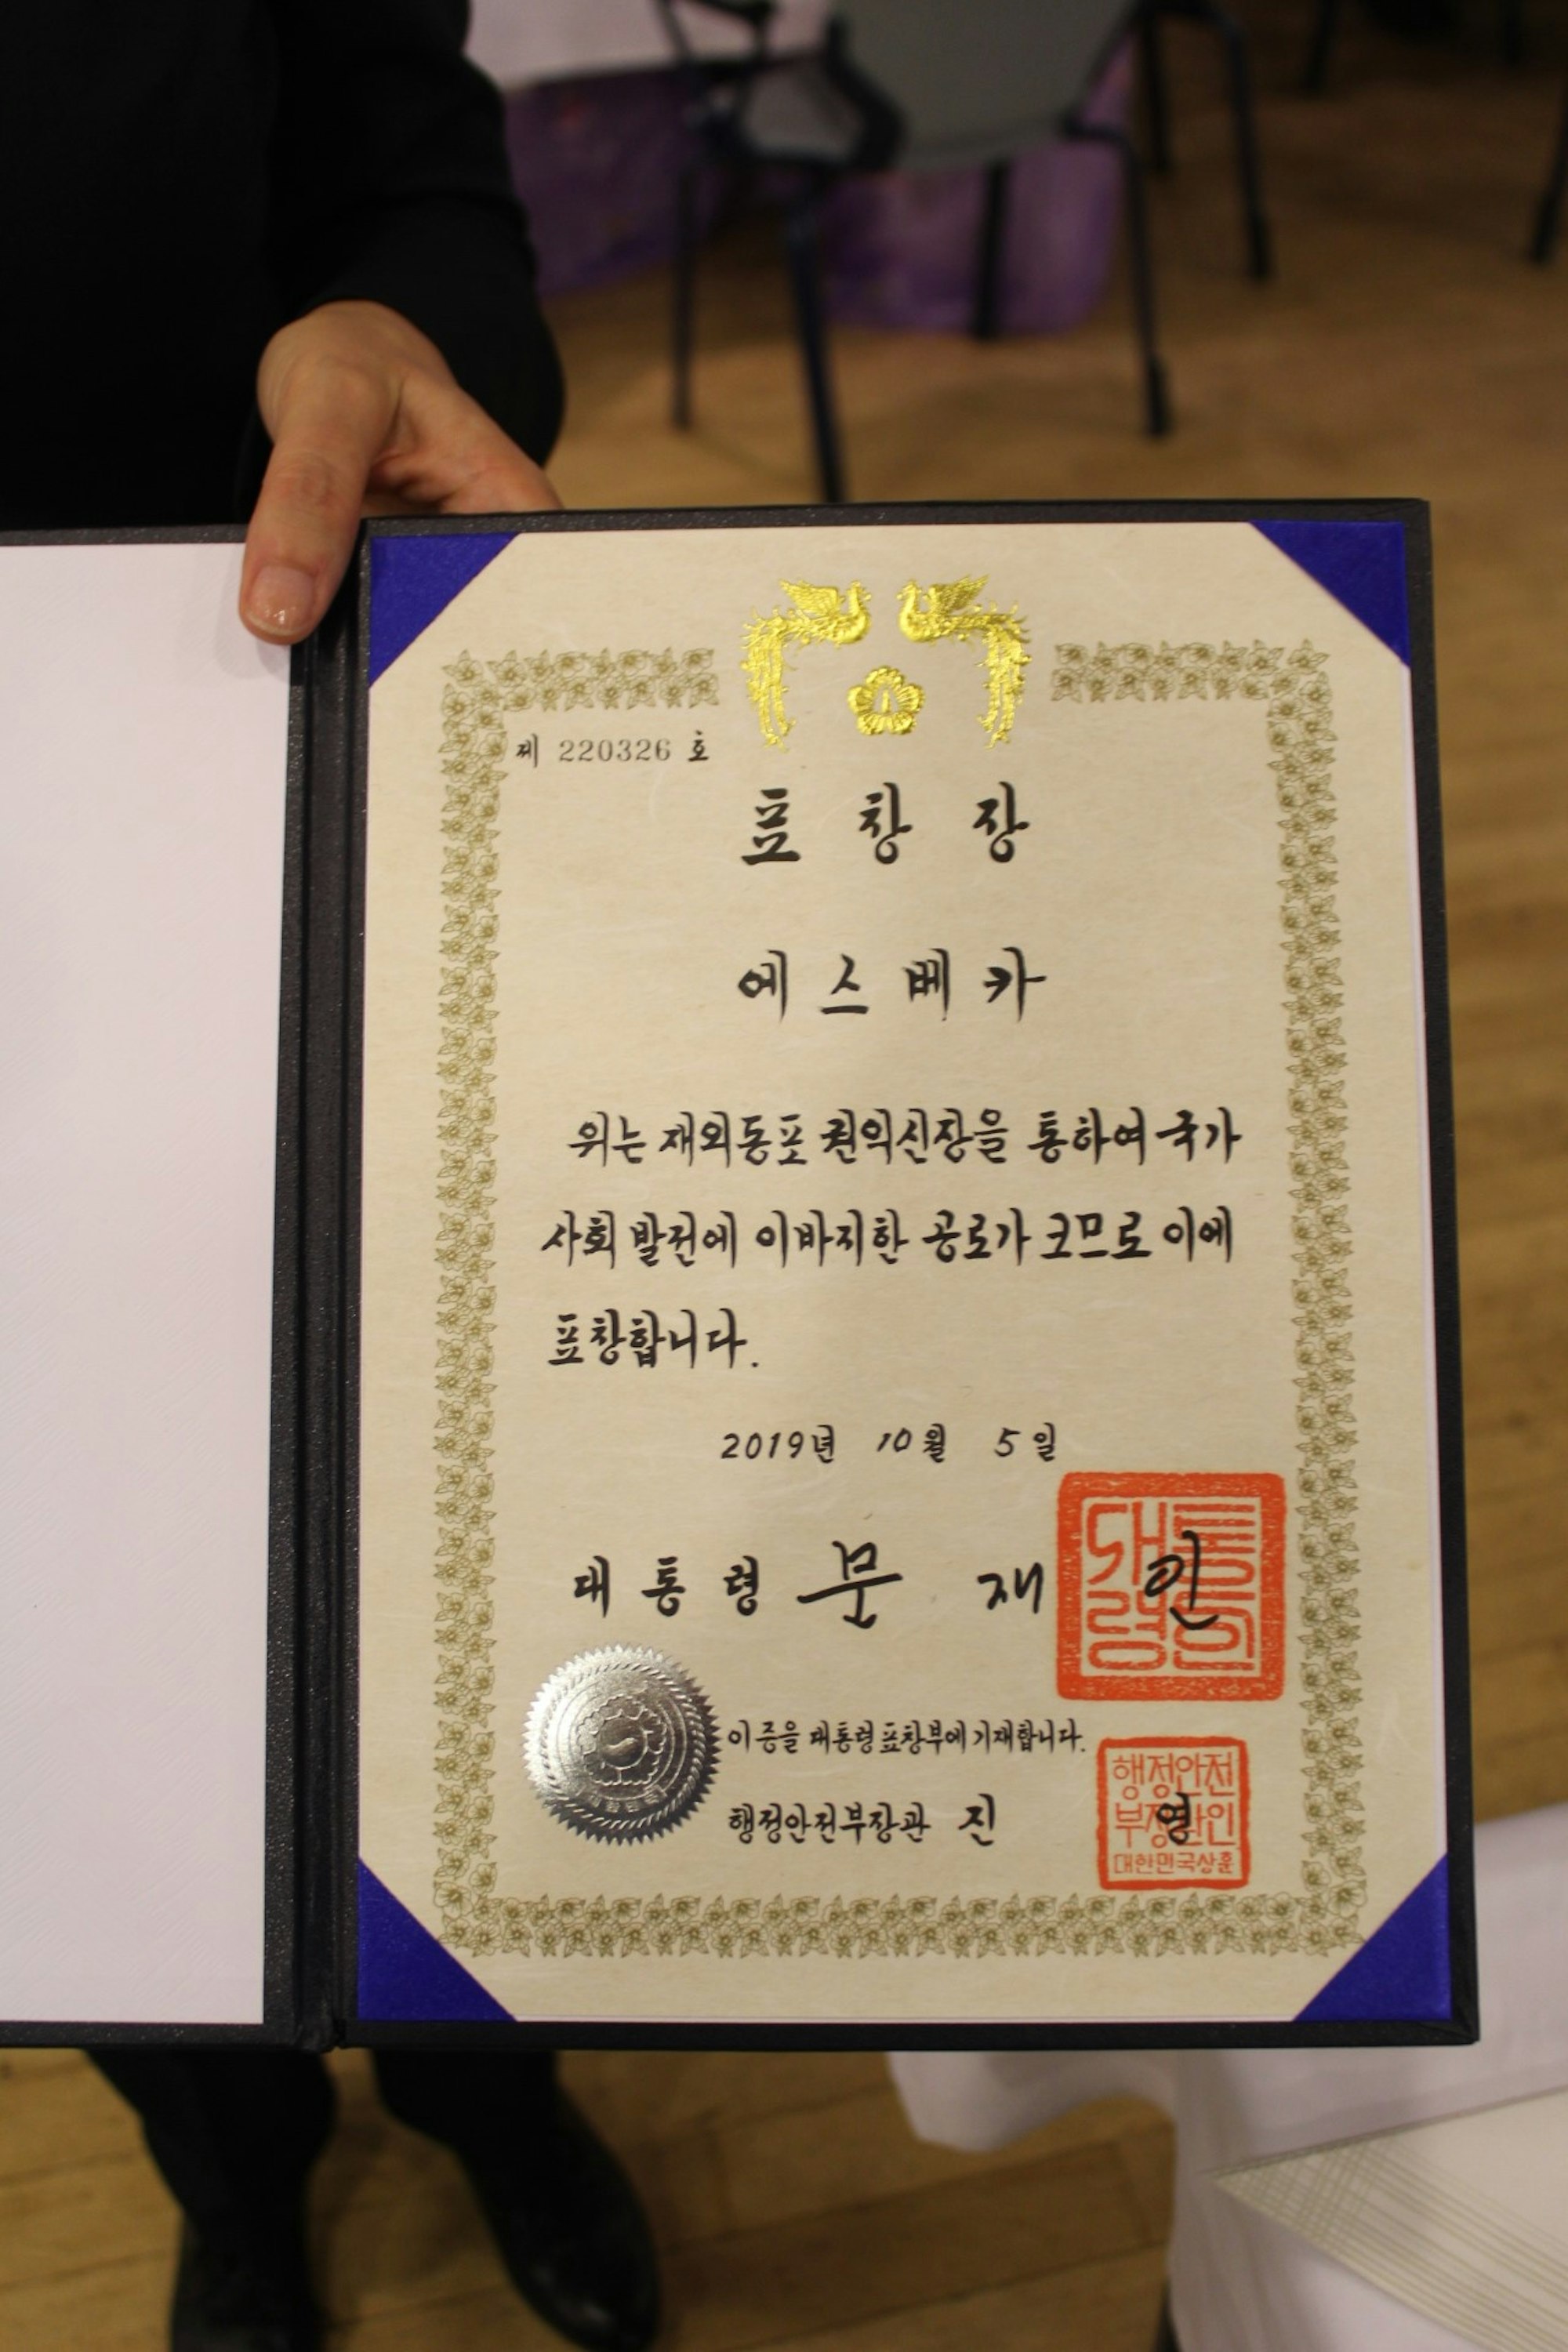 Die Urkunde vom südkoreanischen Präsidenten Moon Jae-in.